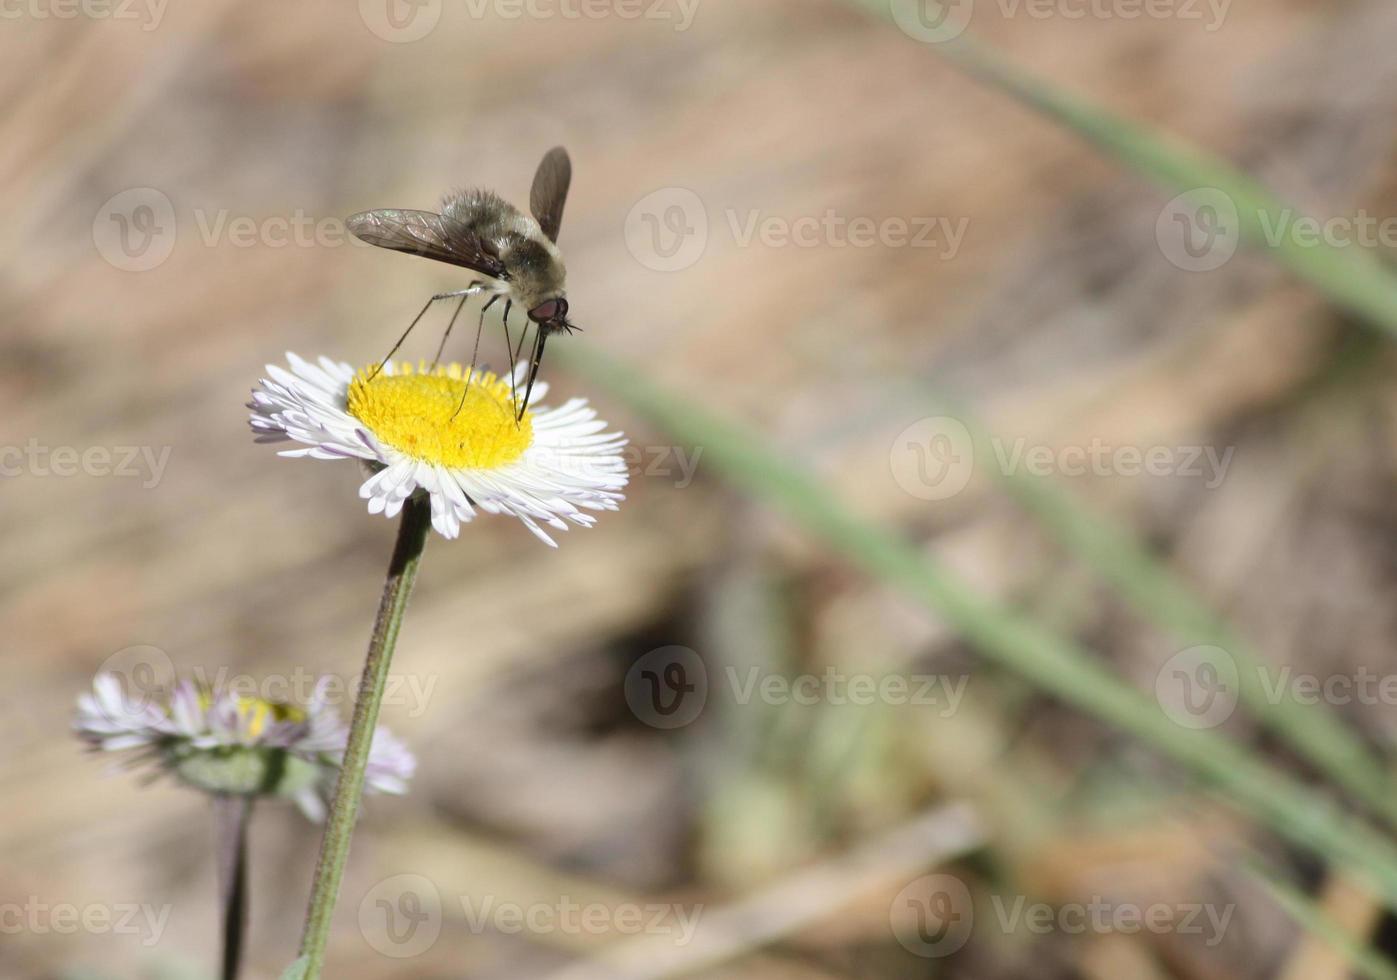 Fuzzy Bienenfliege sammelt Pollen mit ihren Rüssel von einer weißen und gelben Aster foto